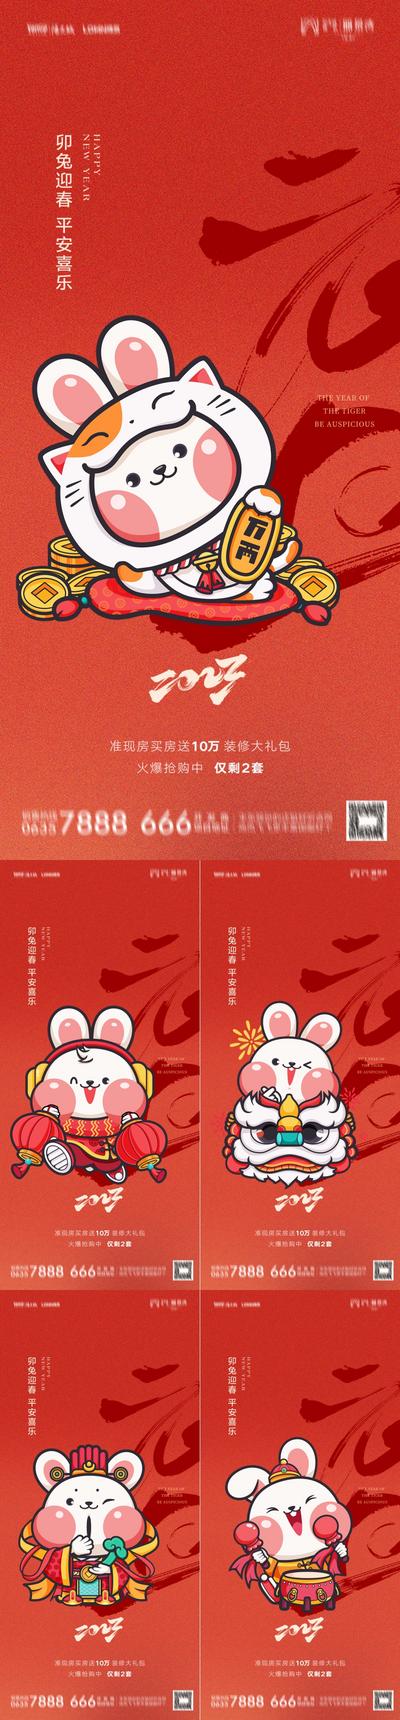 南门网 海报 房地产 中国传统节日 春节 除夕 年俗 兔子 插画